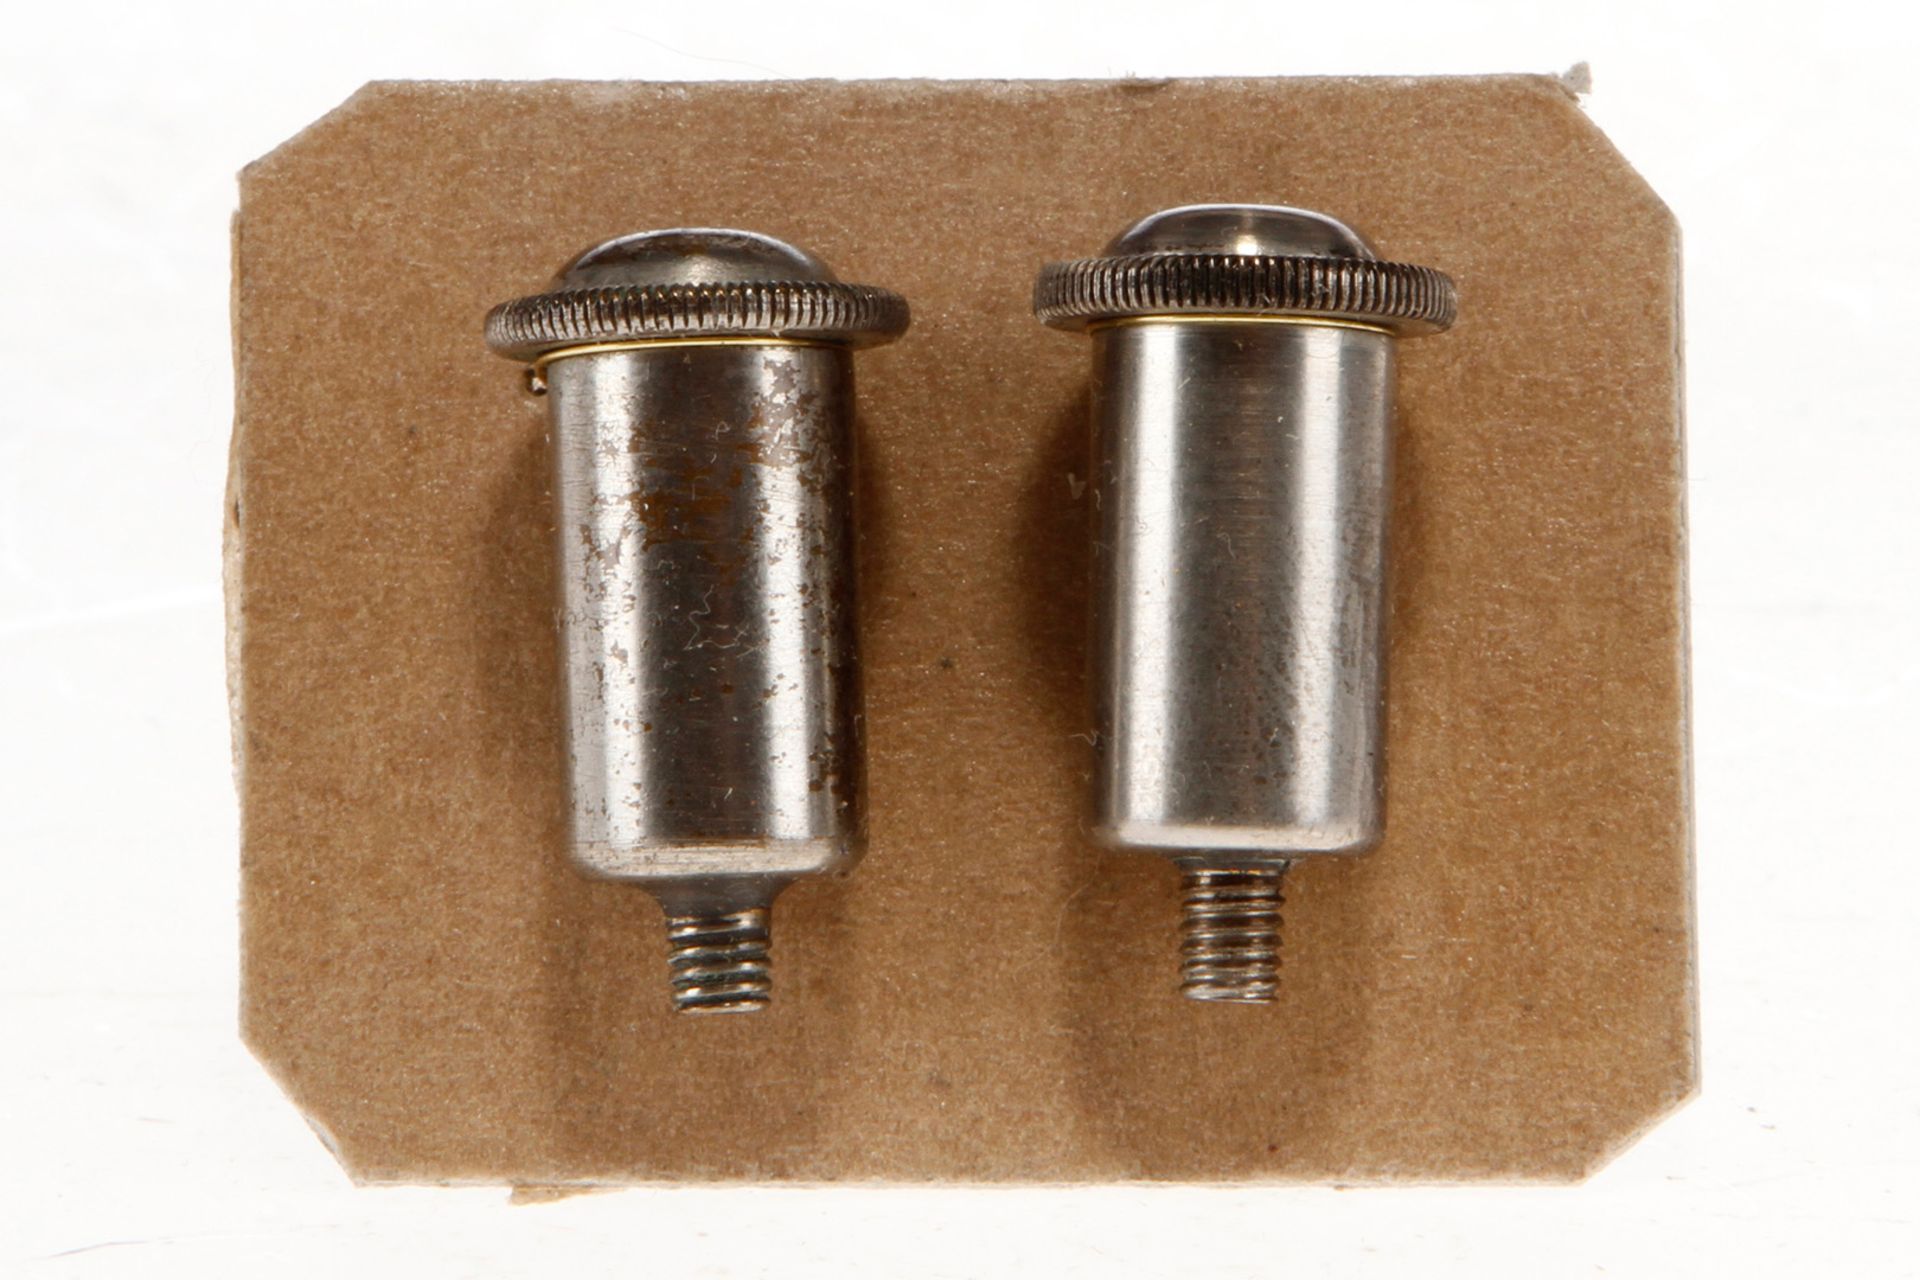 2 Schraubdeckelöler für Märklin Dampfmaschine, Gewinde 3,5 mm